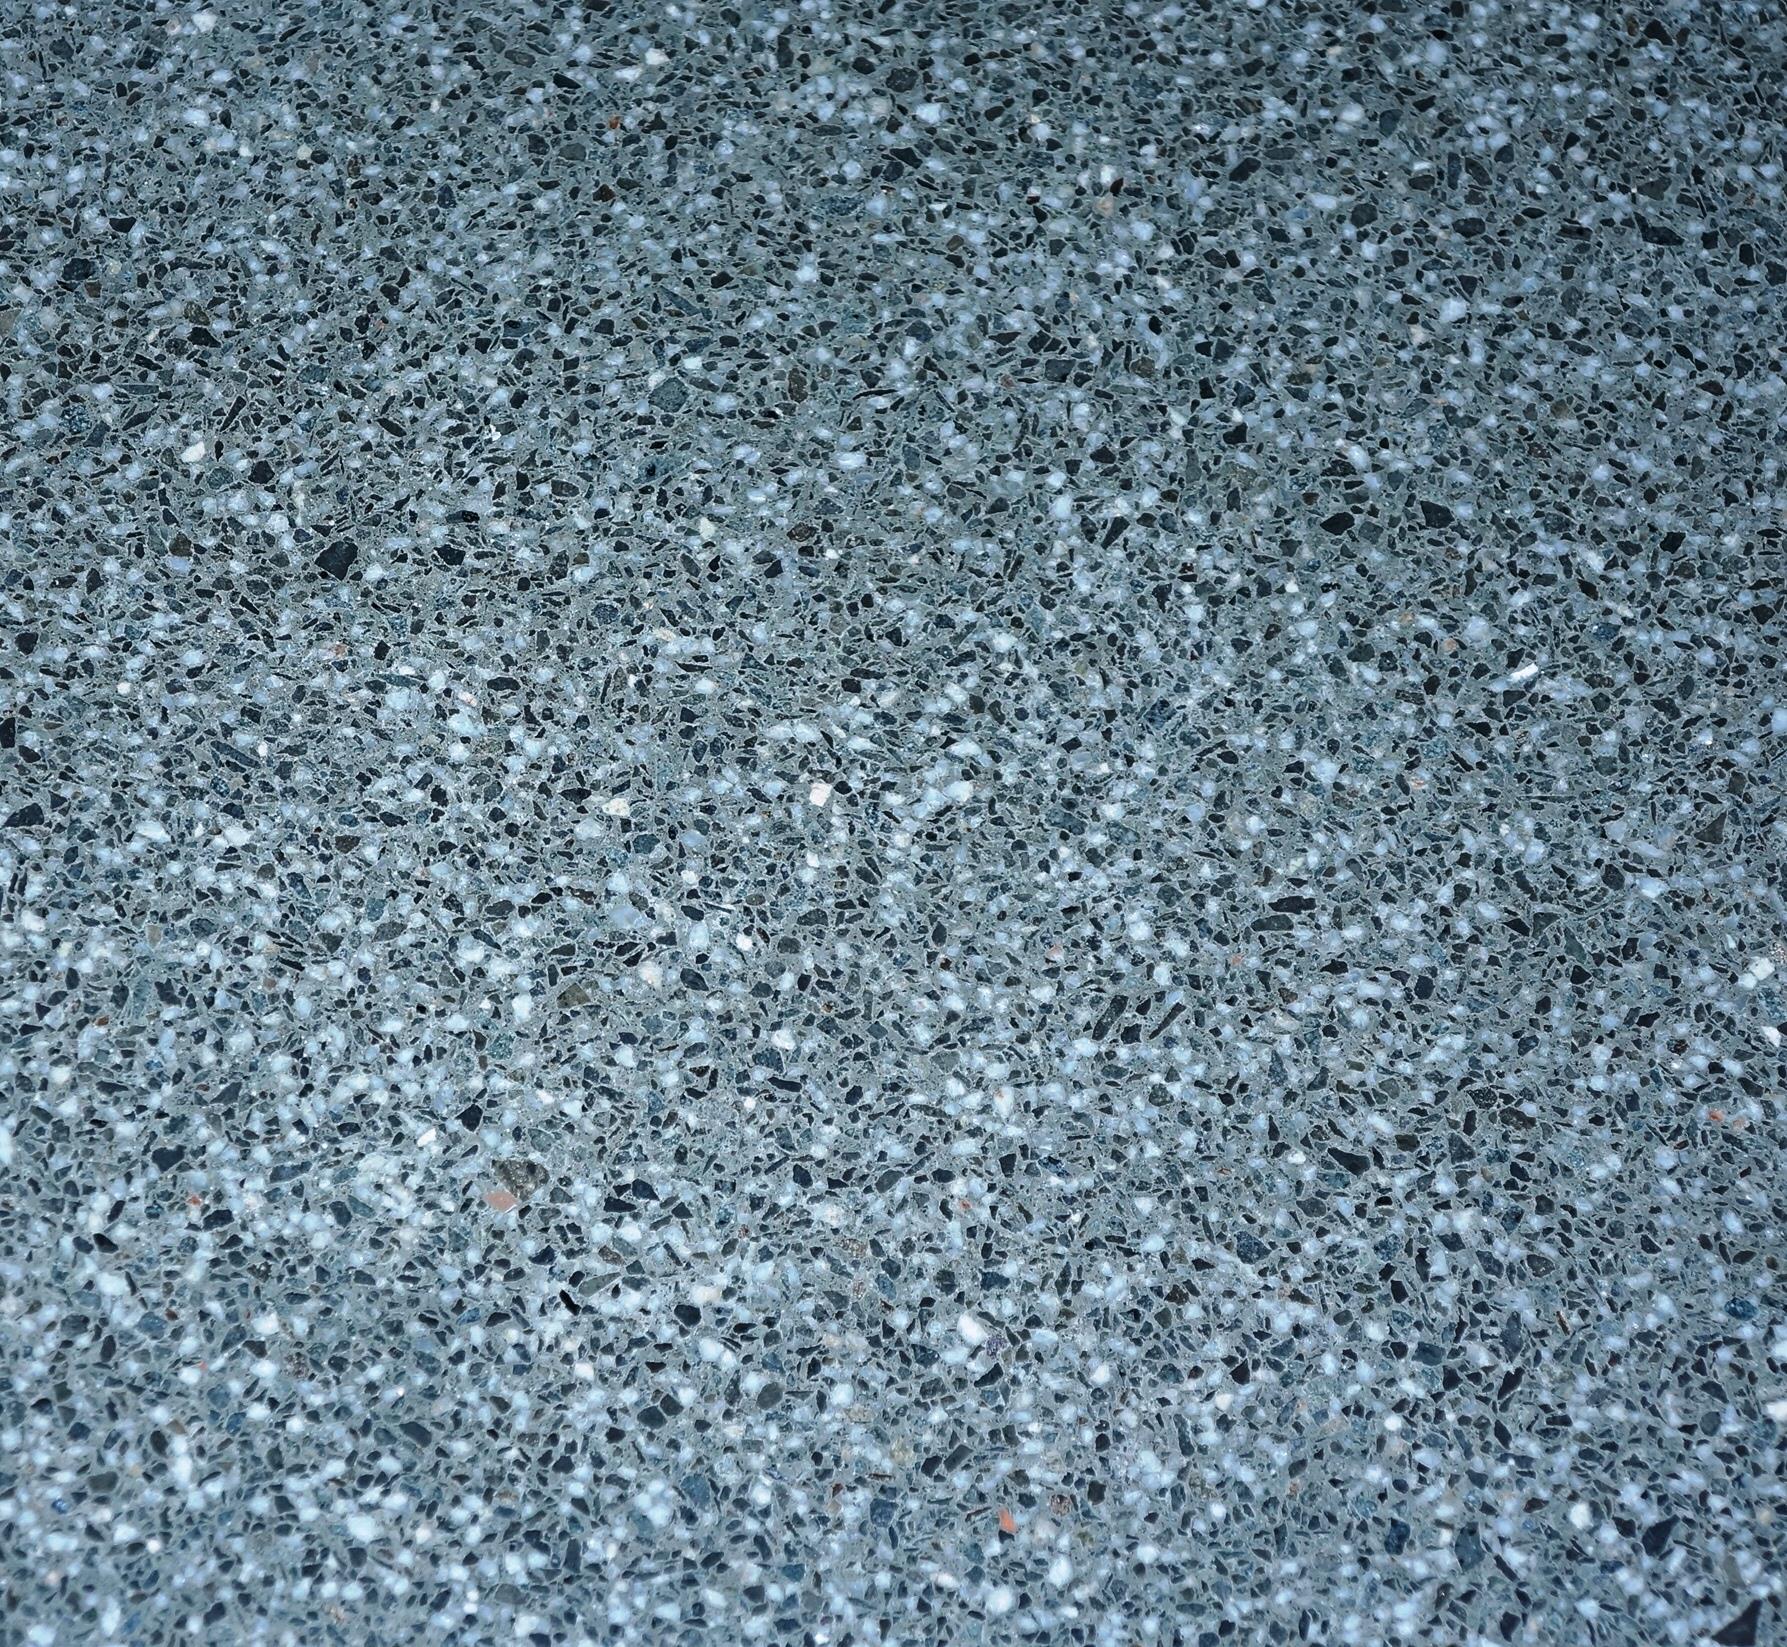 Jual Lantai Batu Keramik Quartz Dark Grey 60 X 60 Harga Murah